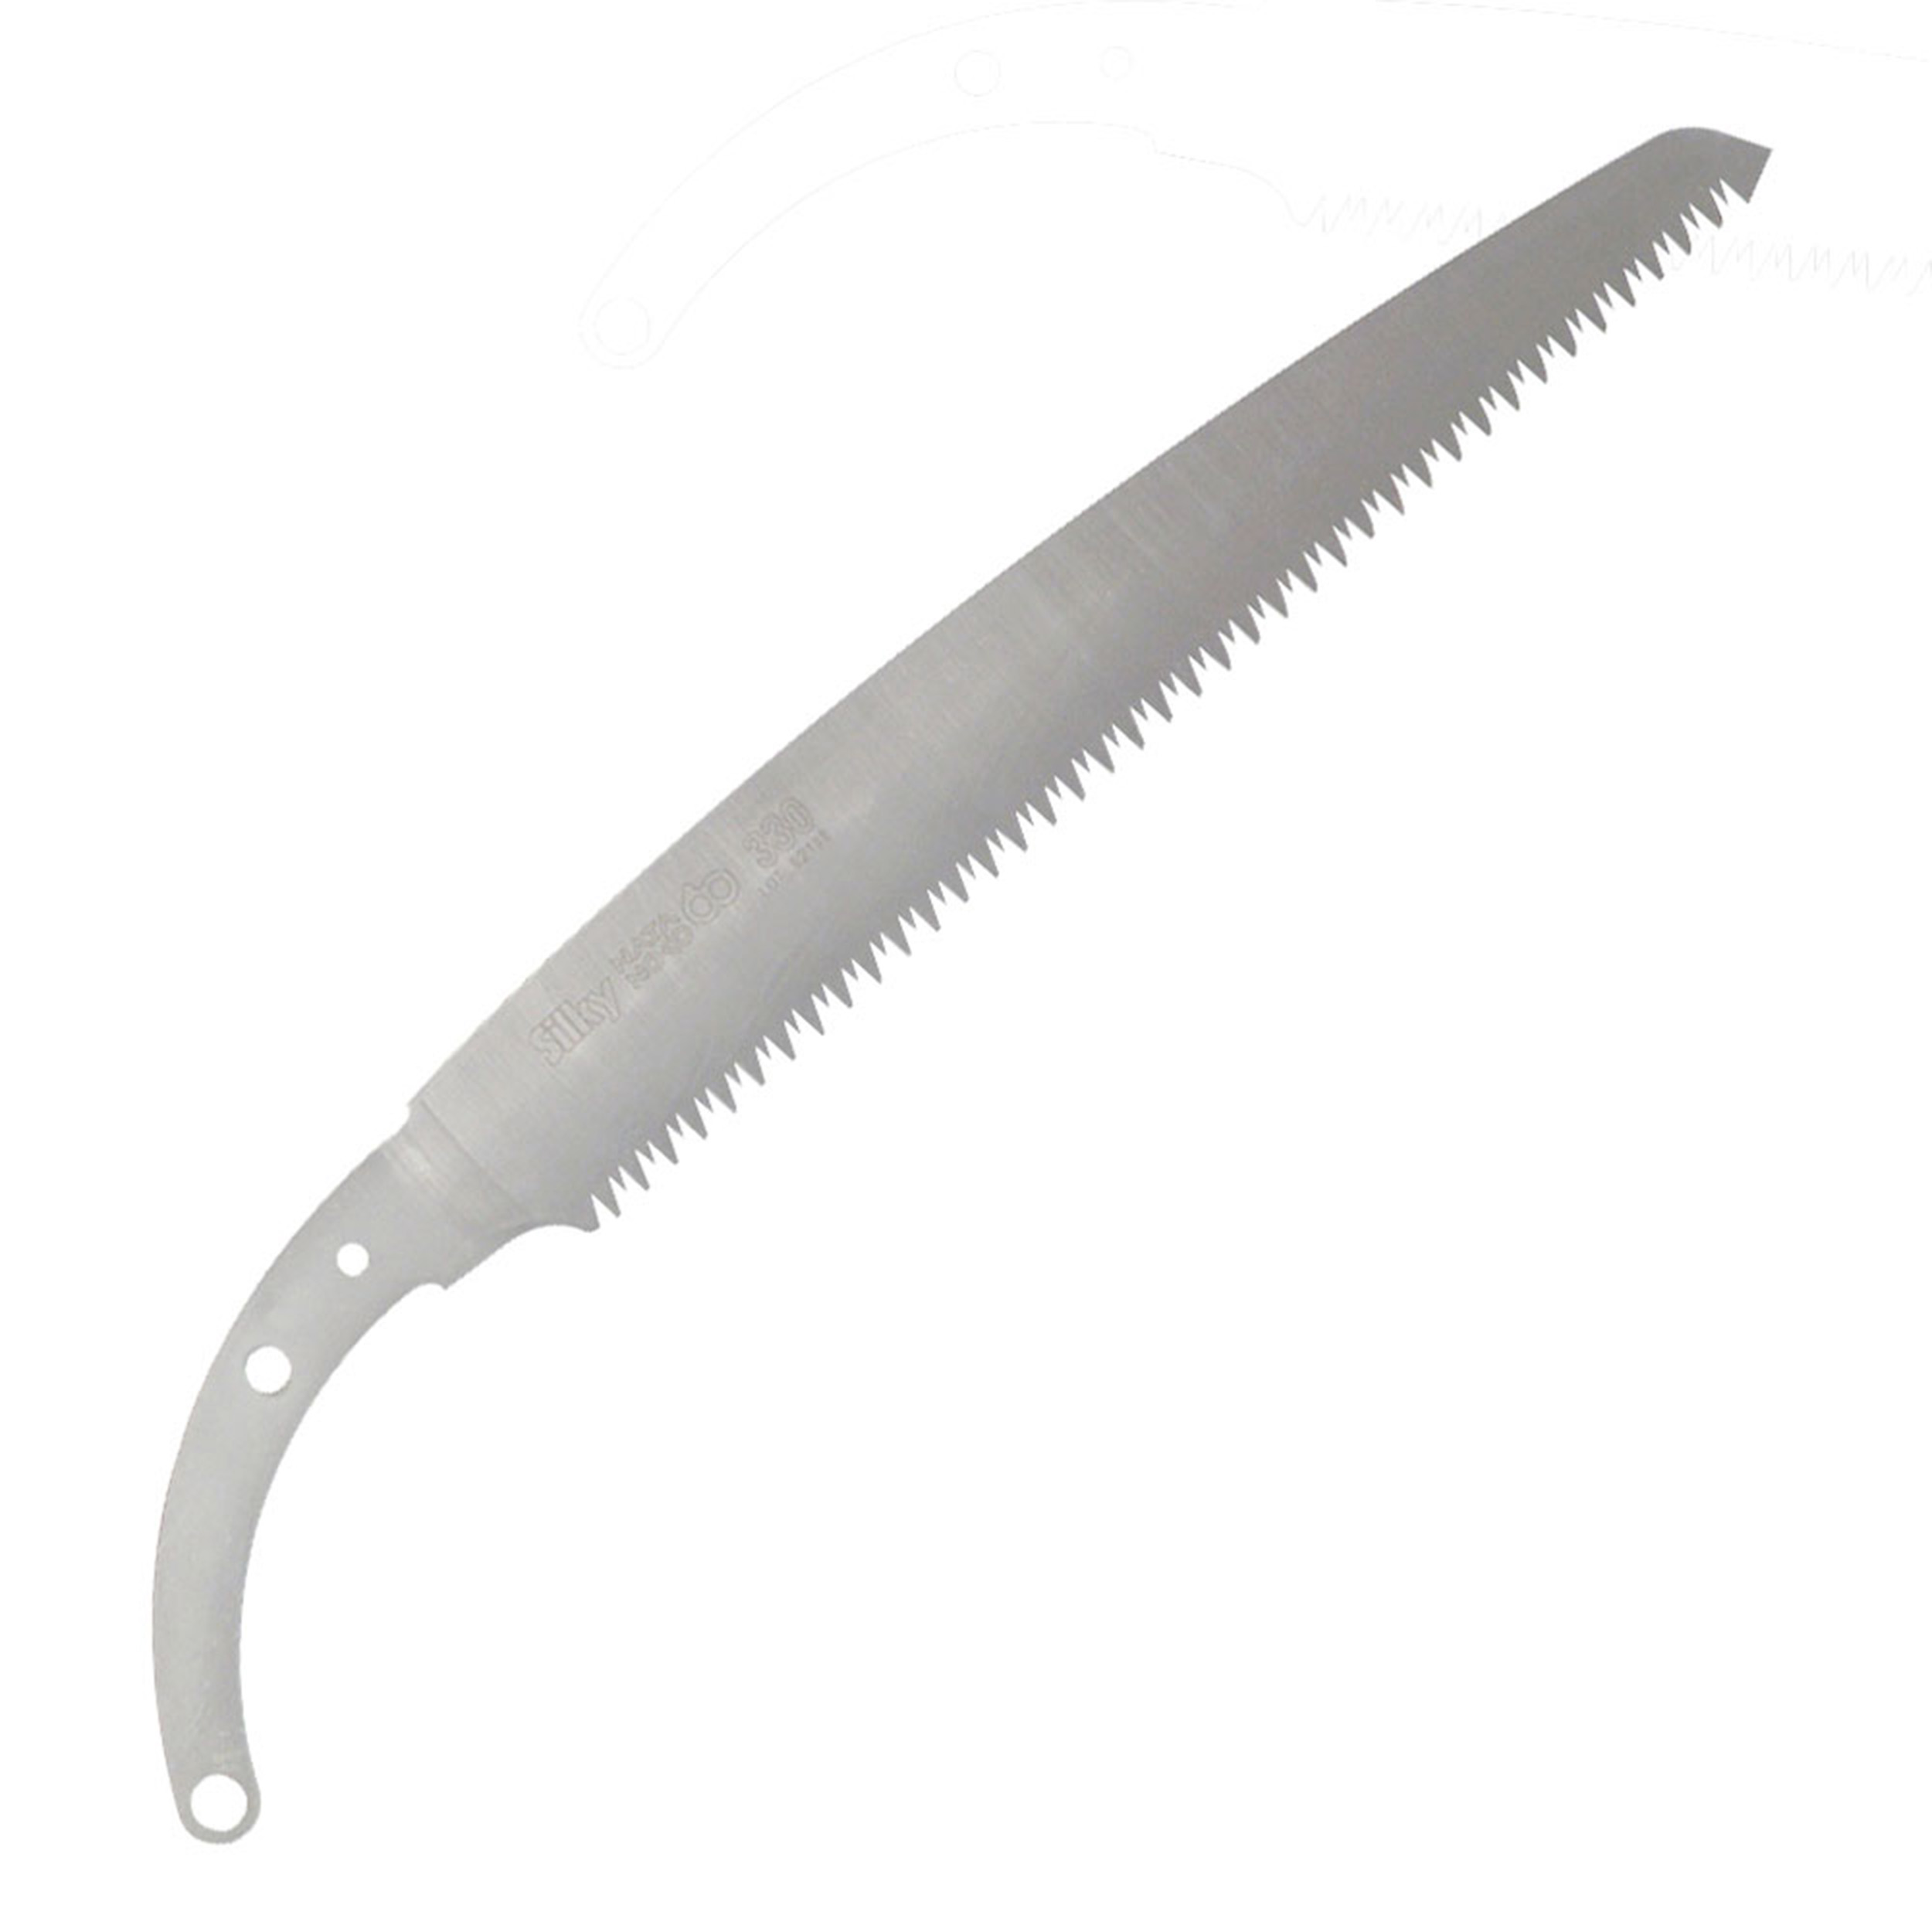 Natanoko Replacement Blade, 330mm, Large Teeth